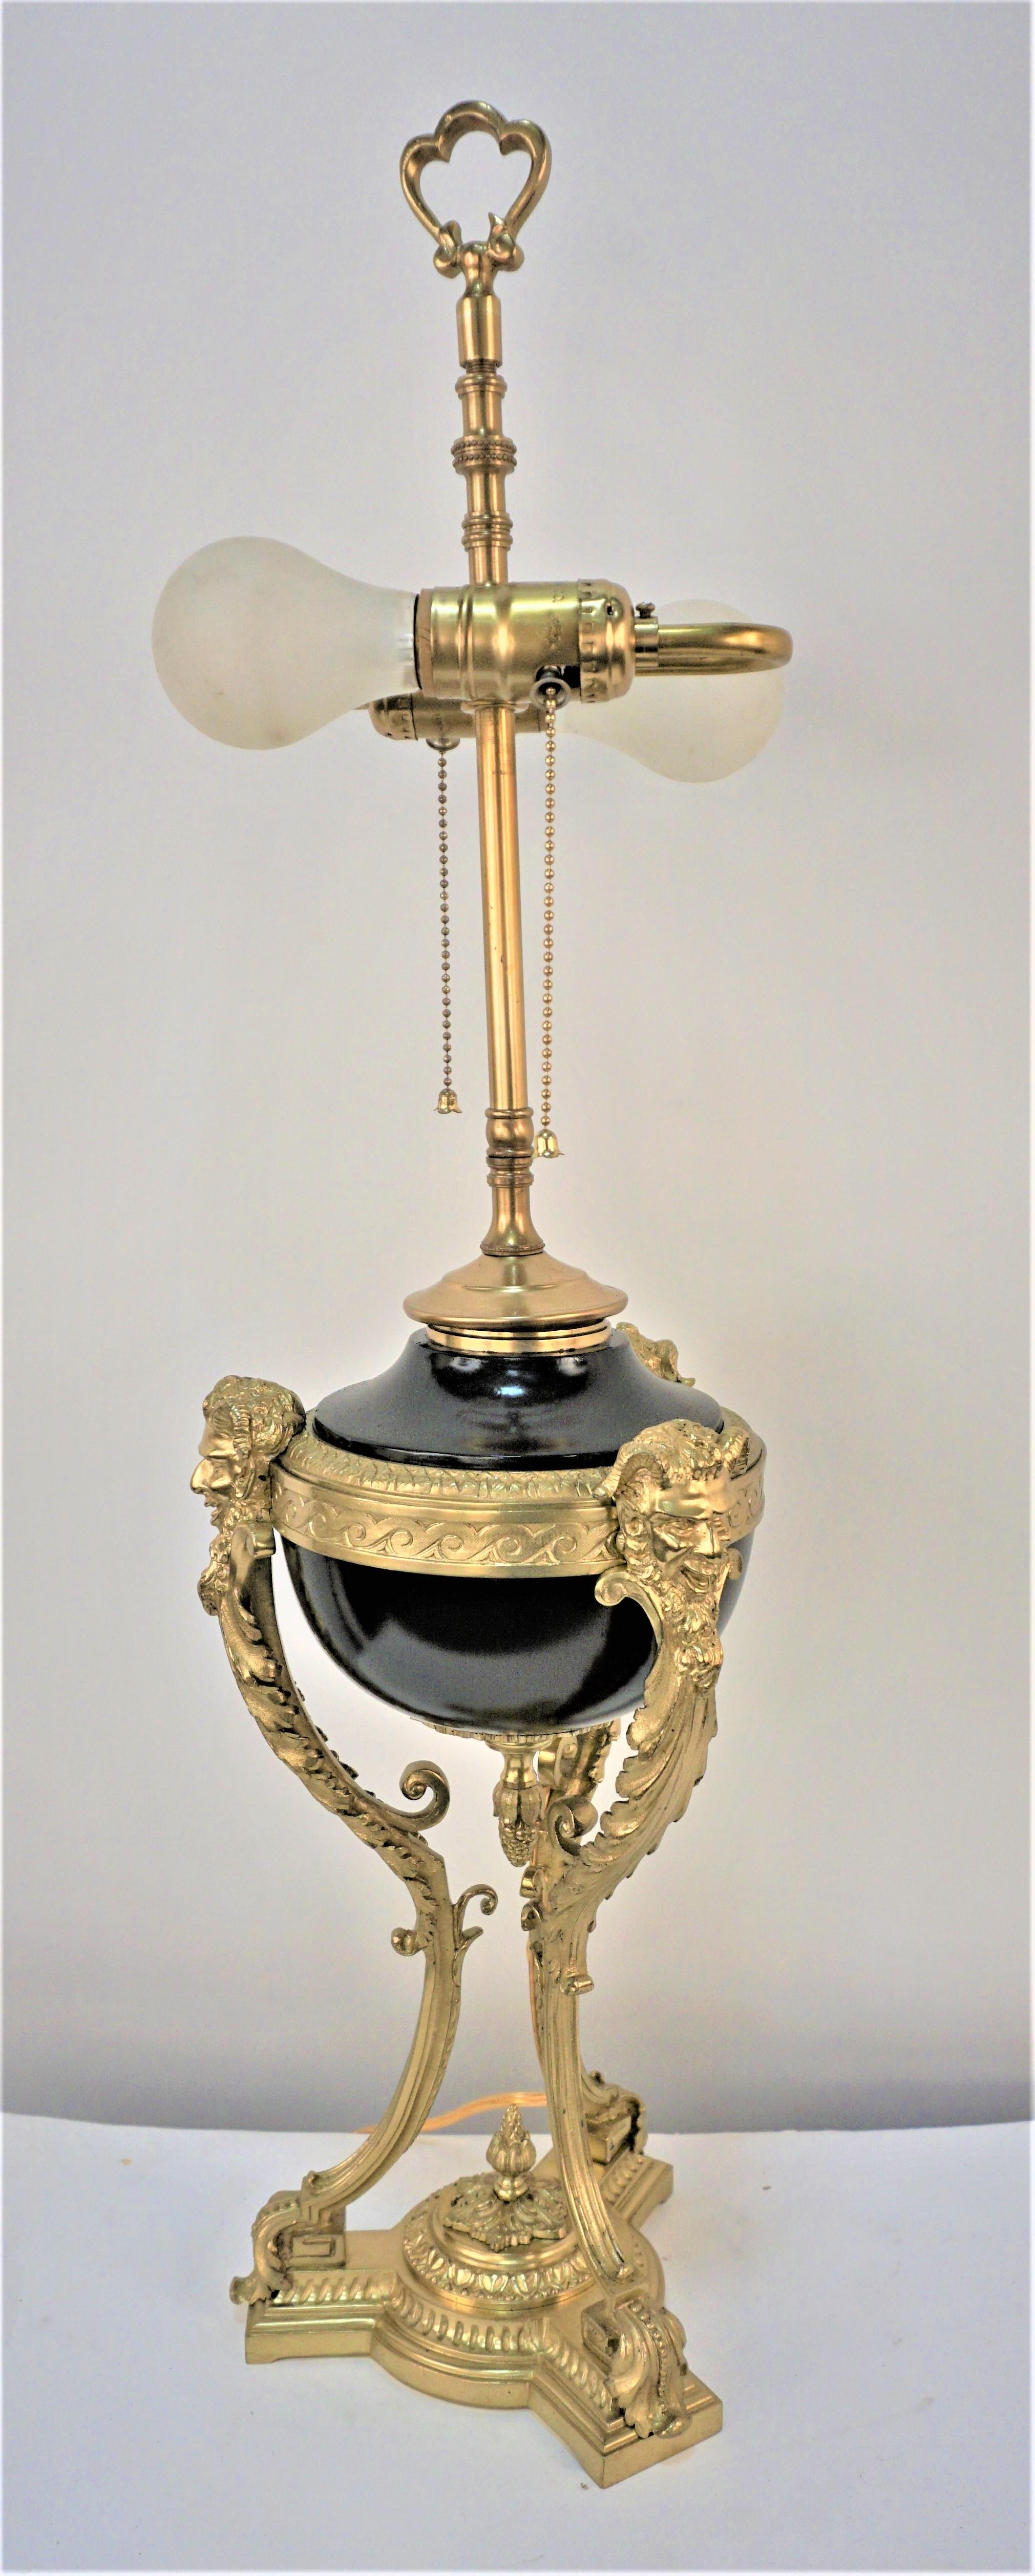 La lampe à huile Empire en bronze a été professionnellement recâblée avec une double douille à chaîne et équipée d'un abat-jour en carton dur.
Les mesures comprennent l'abat-jour.